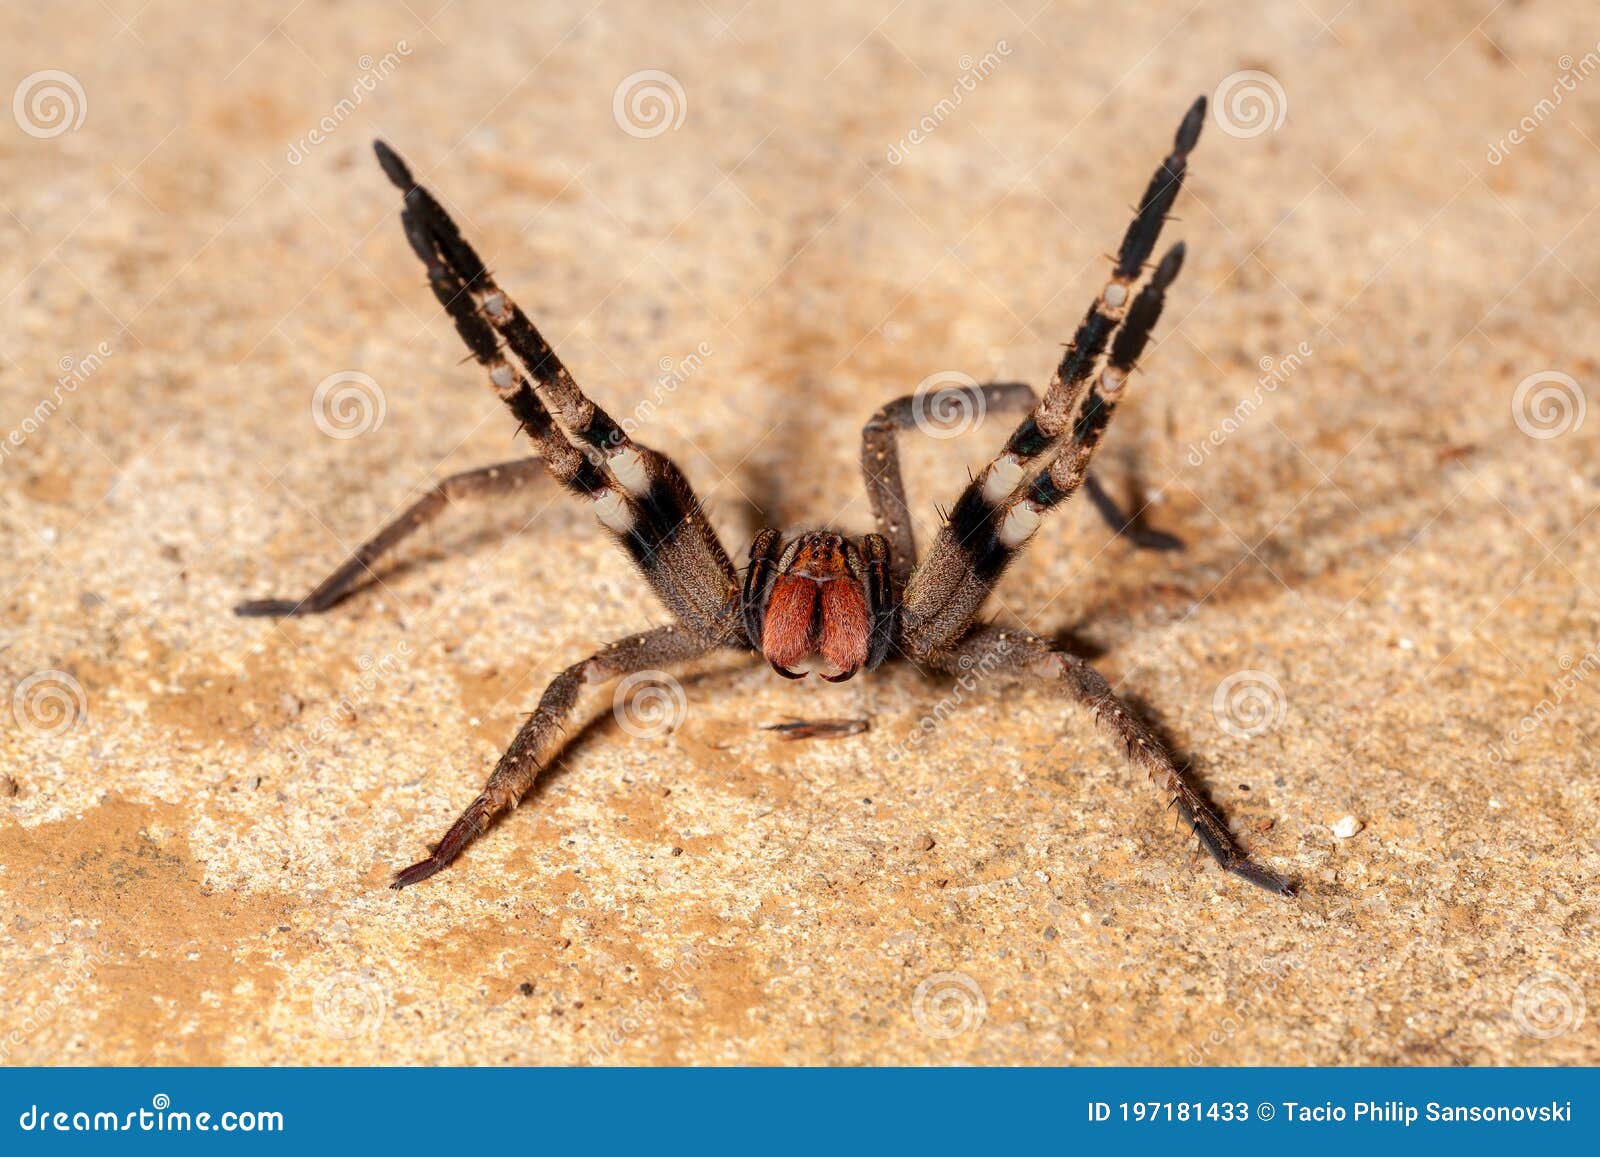 brazilian wandering spider - danger poisonous phoneutria ctenidae